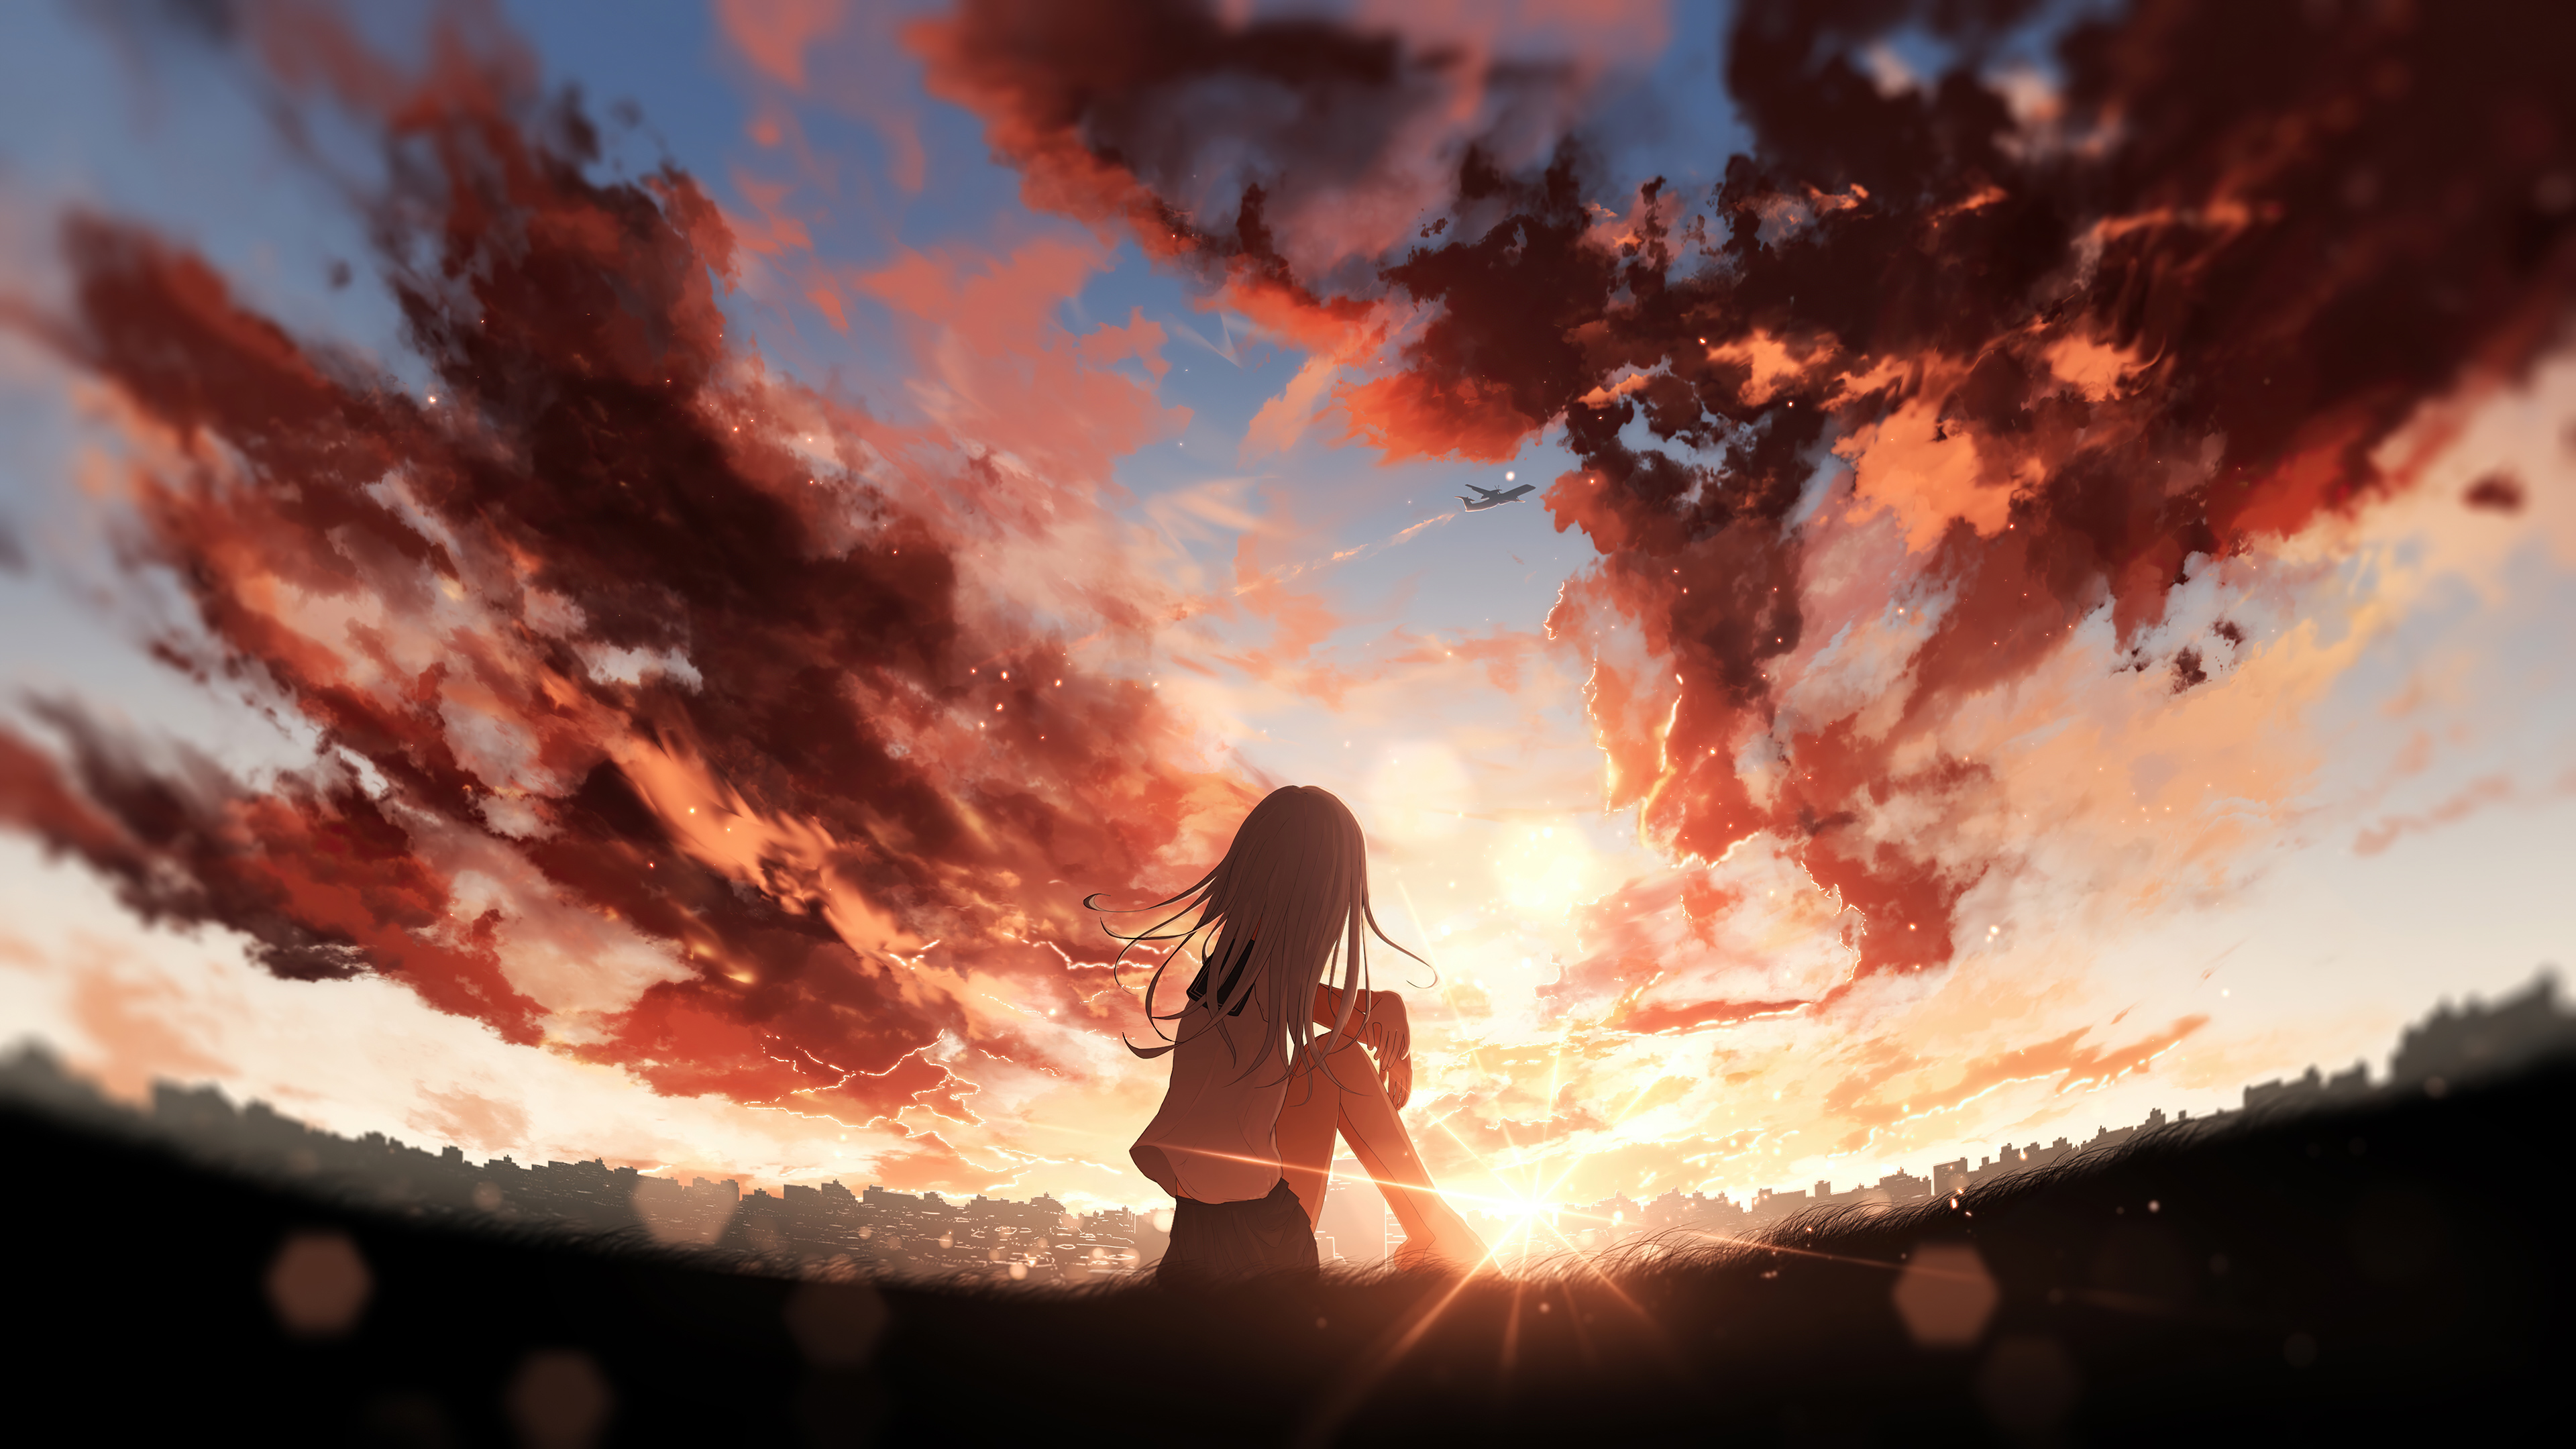 Download free Anime Scenery Sunset River Wallpaper - MrWallpaper.com